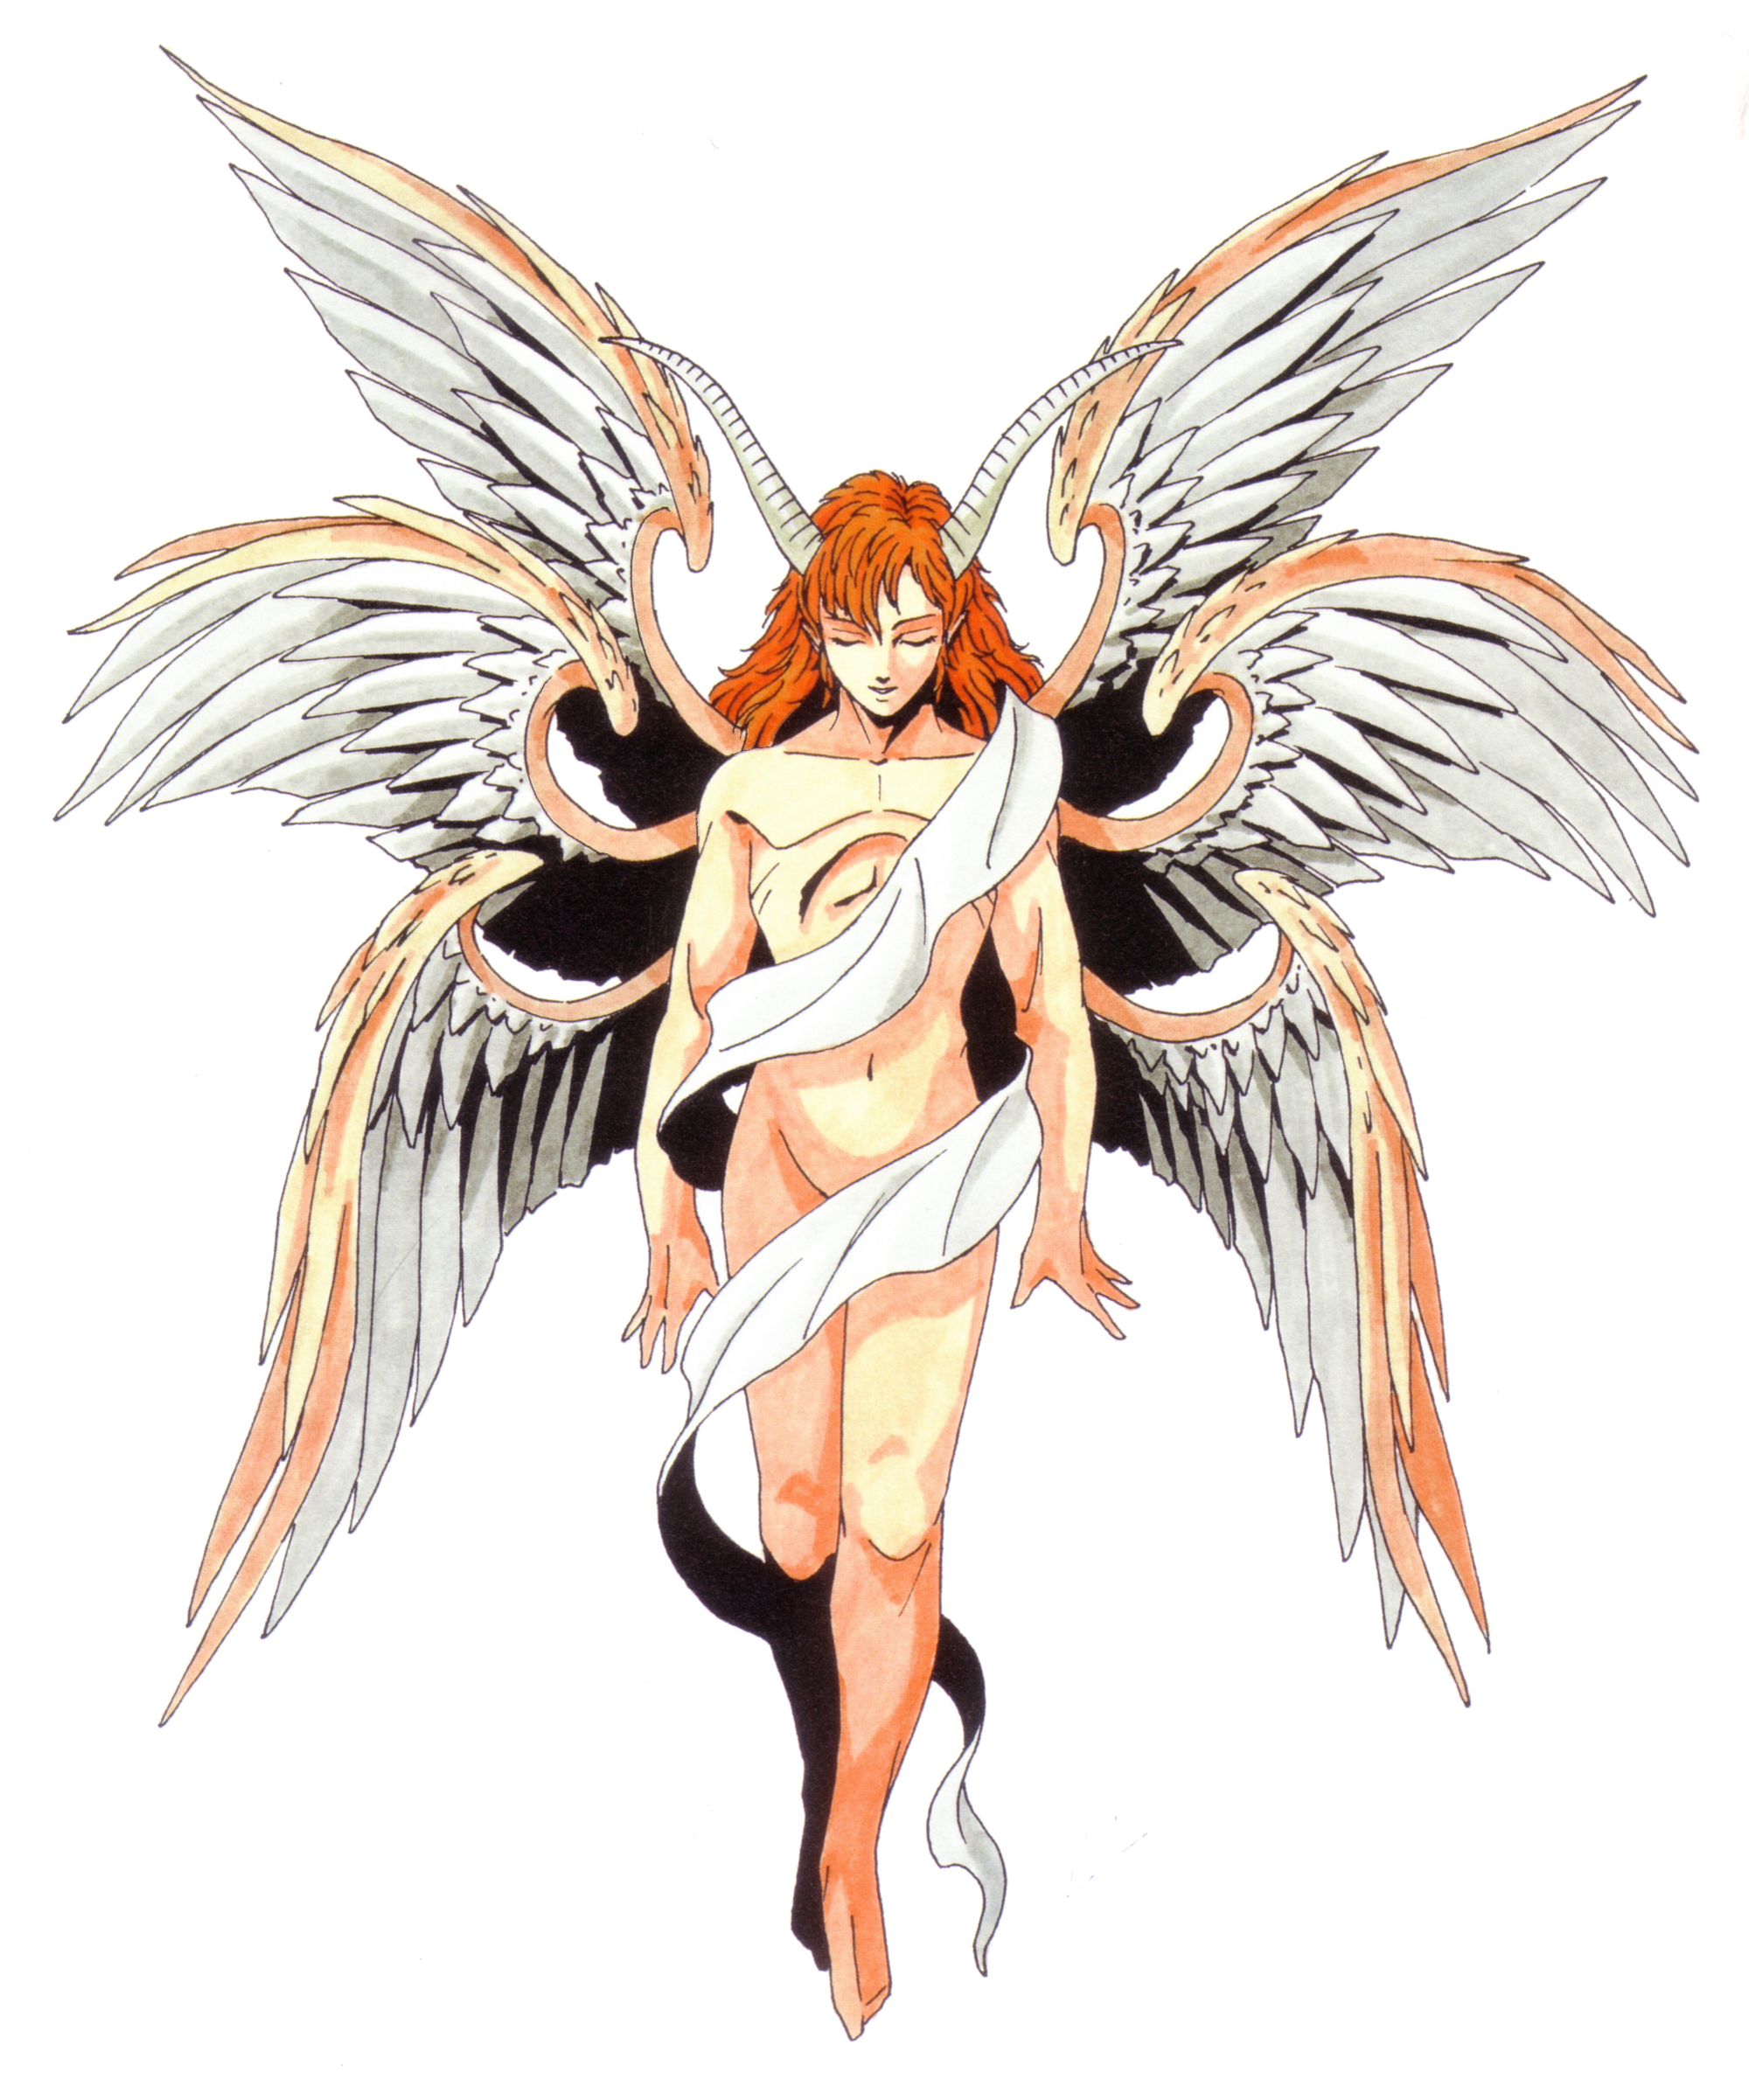  Lucifer  Megami Tensei Wiki FANDOM powered by Wikia